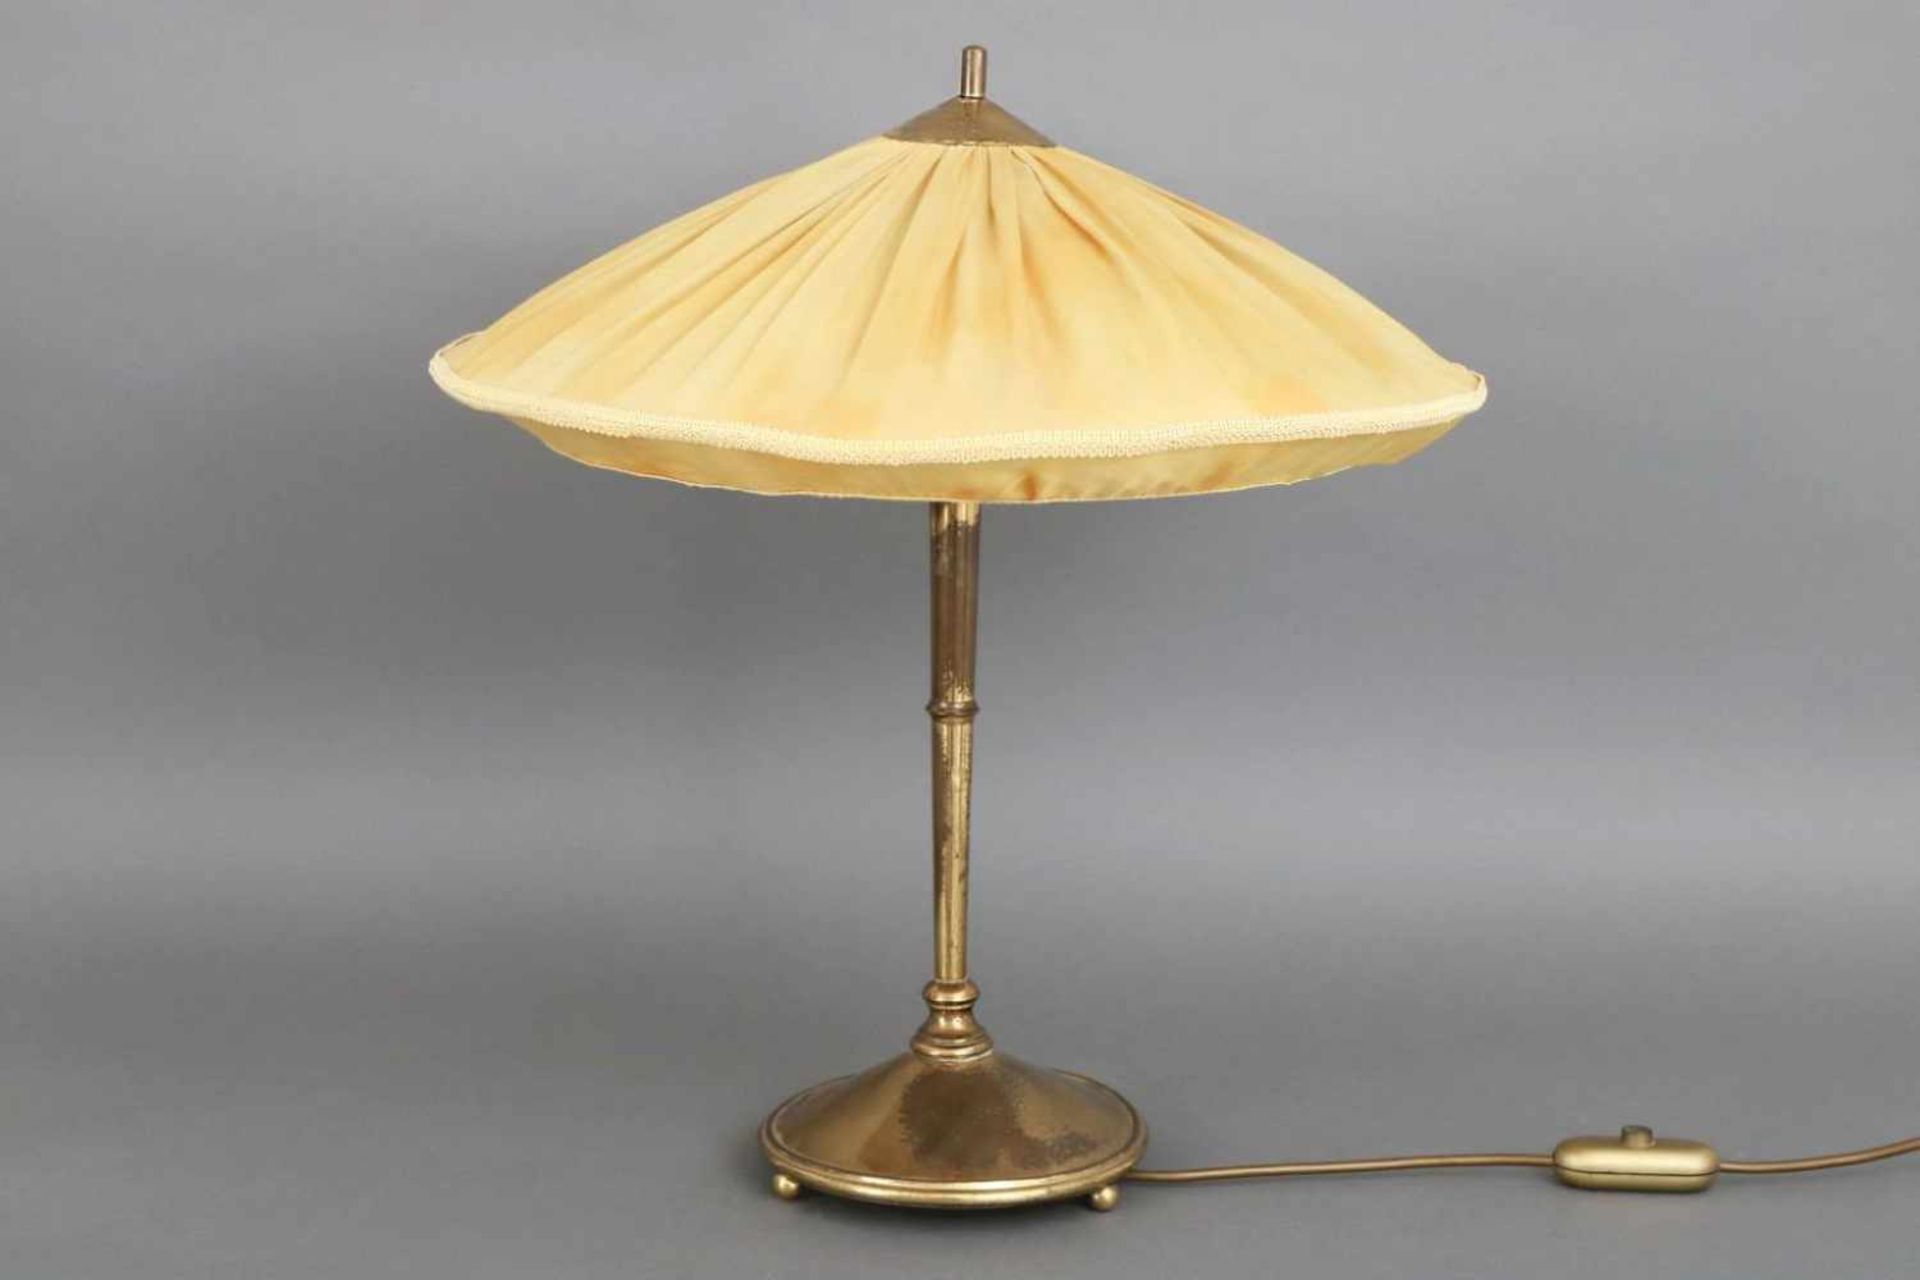 Tischlampe der 1920er JahreFuß Messing, Säulenschaft auf Rundstand mit Kugelfüßen, heller, konischer